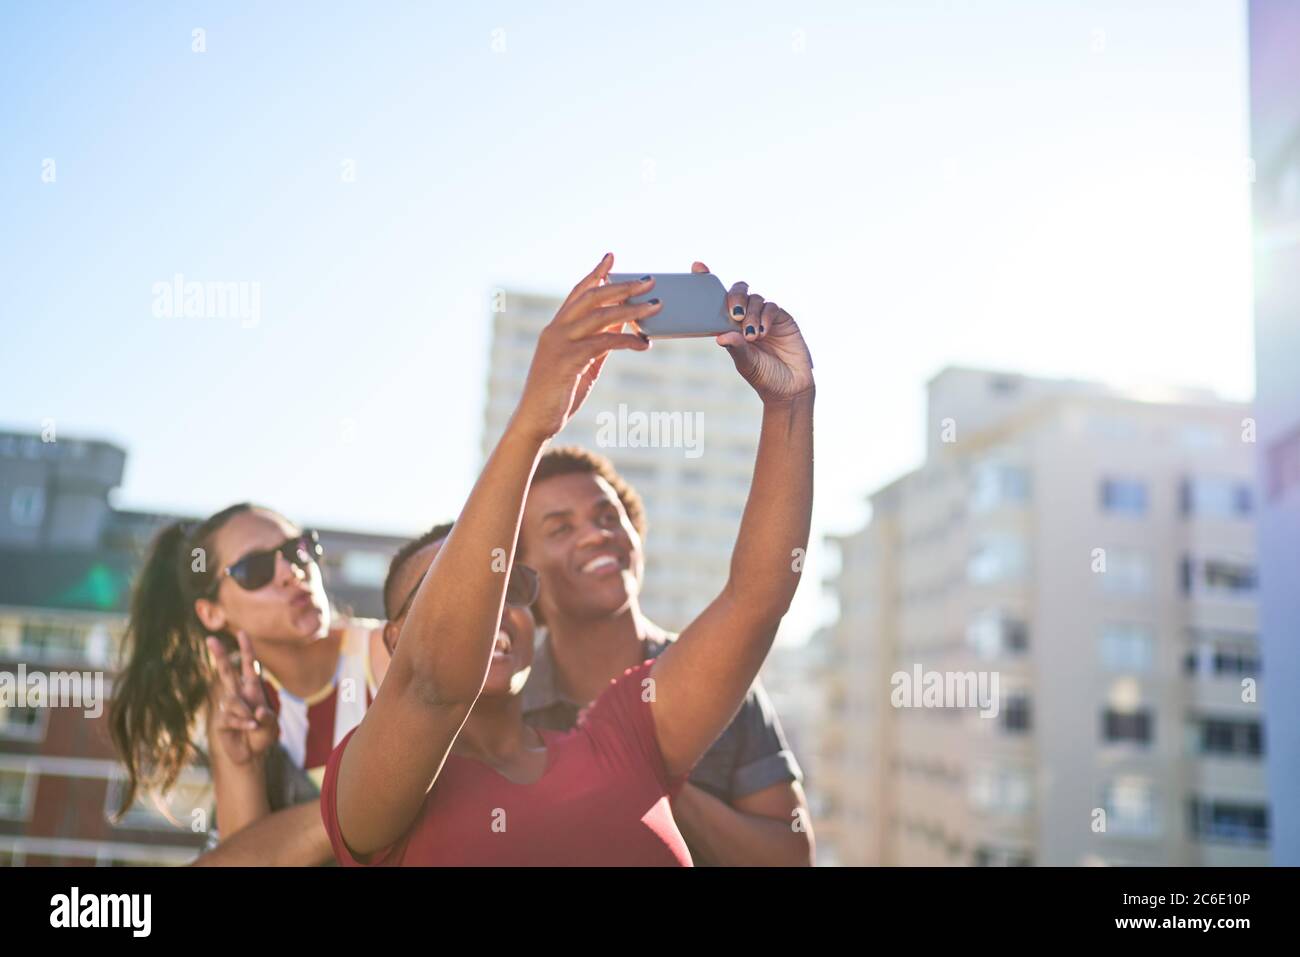 De jeunes amis prennent le selfie avec un smartphone sur un toit urbain ensoleillé Banque D'Images